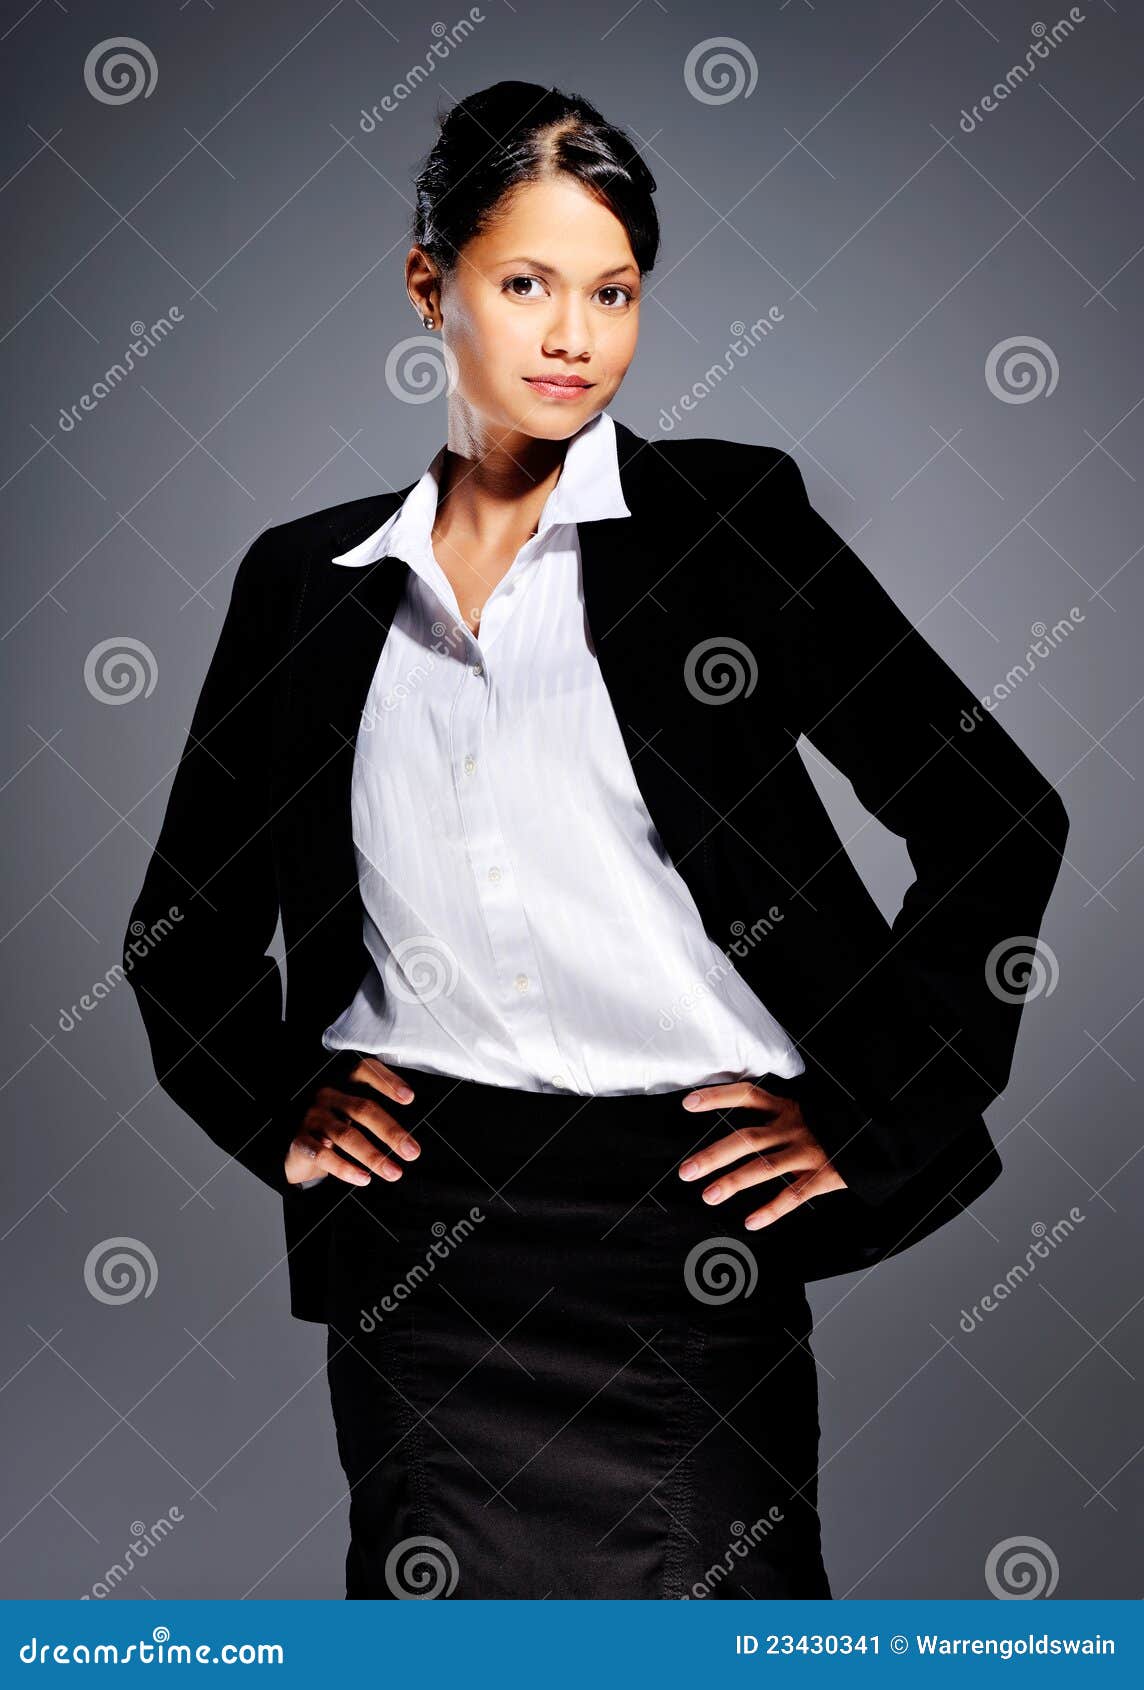 Accomplished businesswoman stock image. Image of asian - 23430341